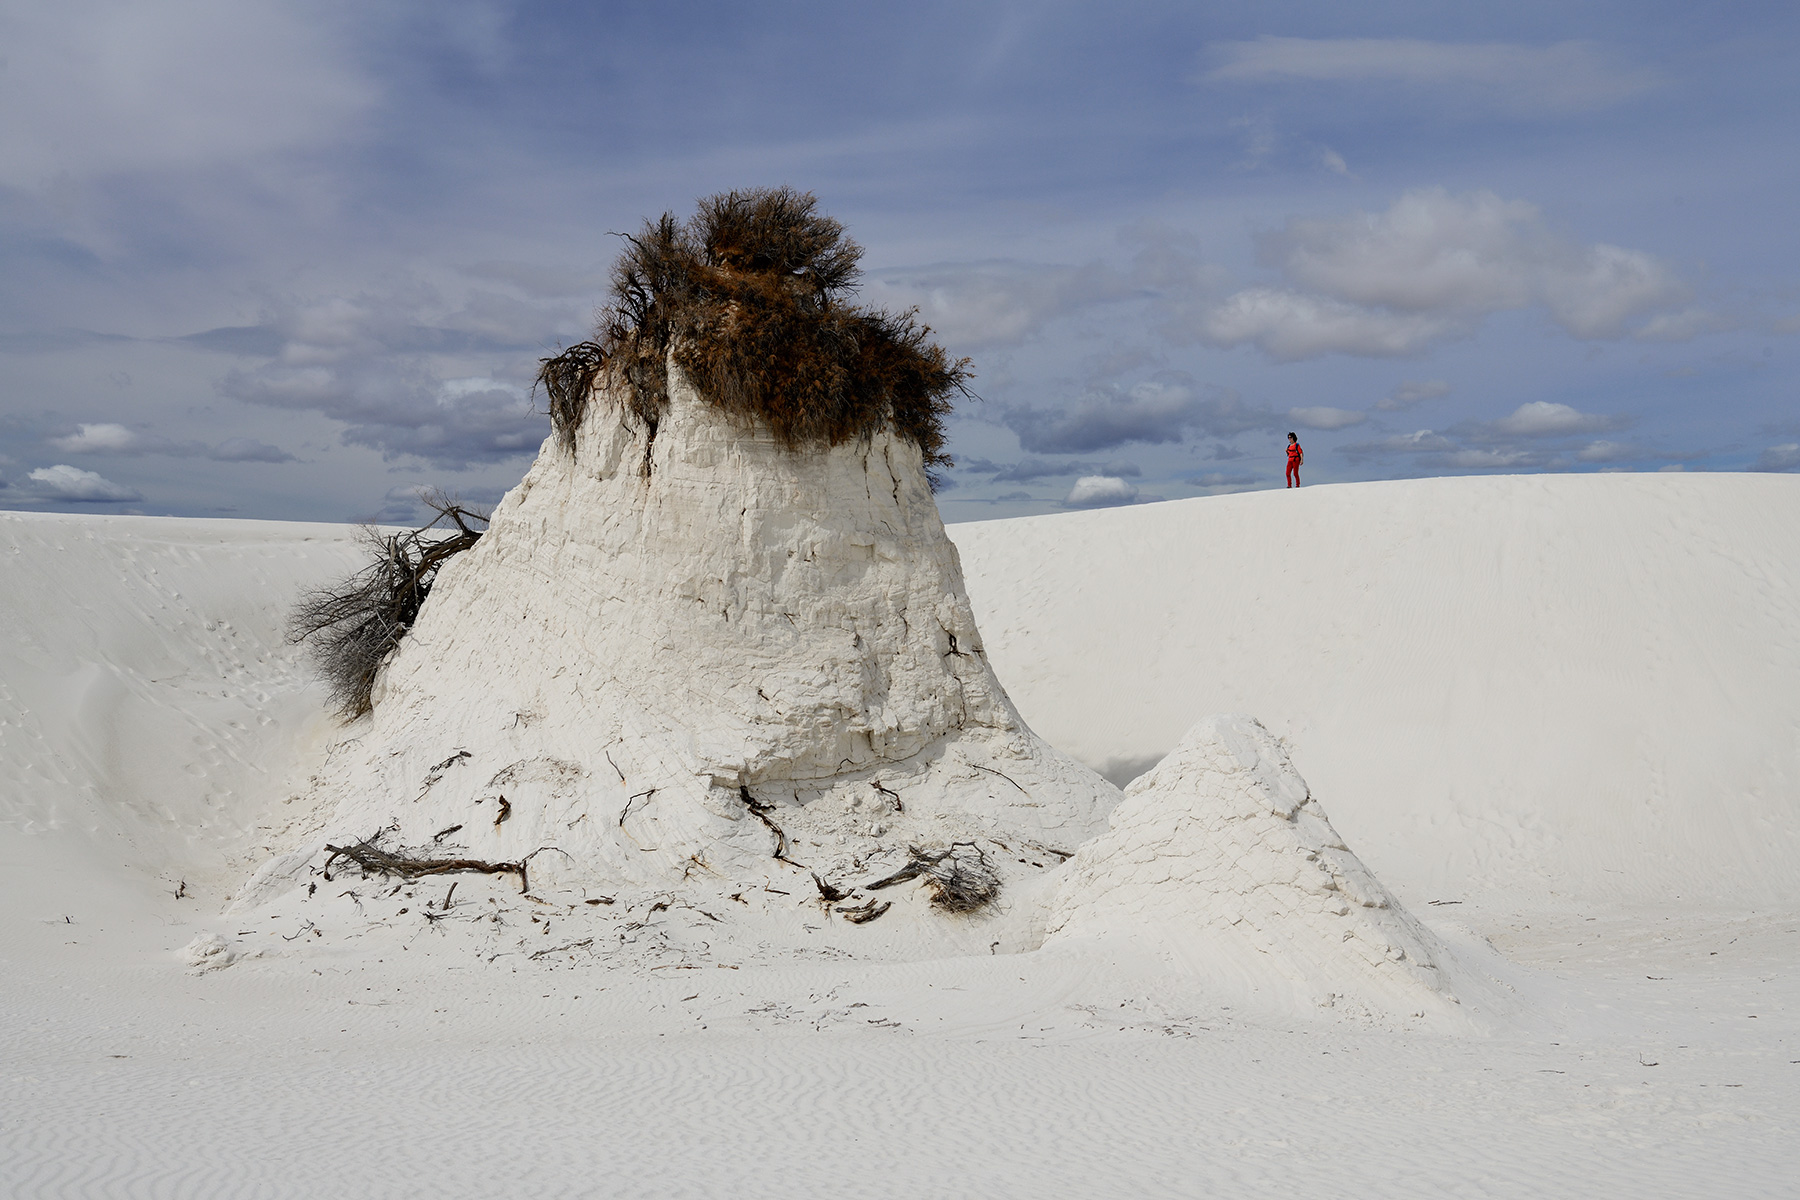 White Sands National Park (Nouveau Mexique, USA) - Monticule de gypse avec arbuste à son sommet, au milieu des dunes de sable blanc 